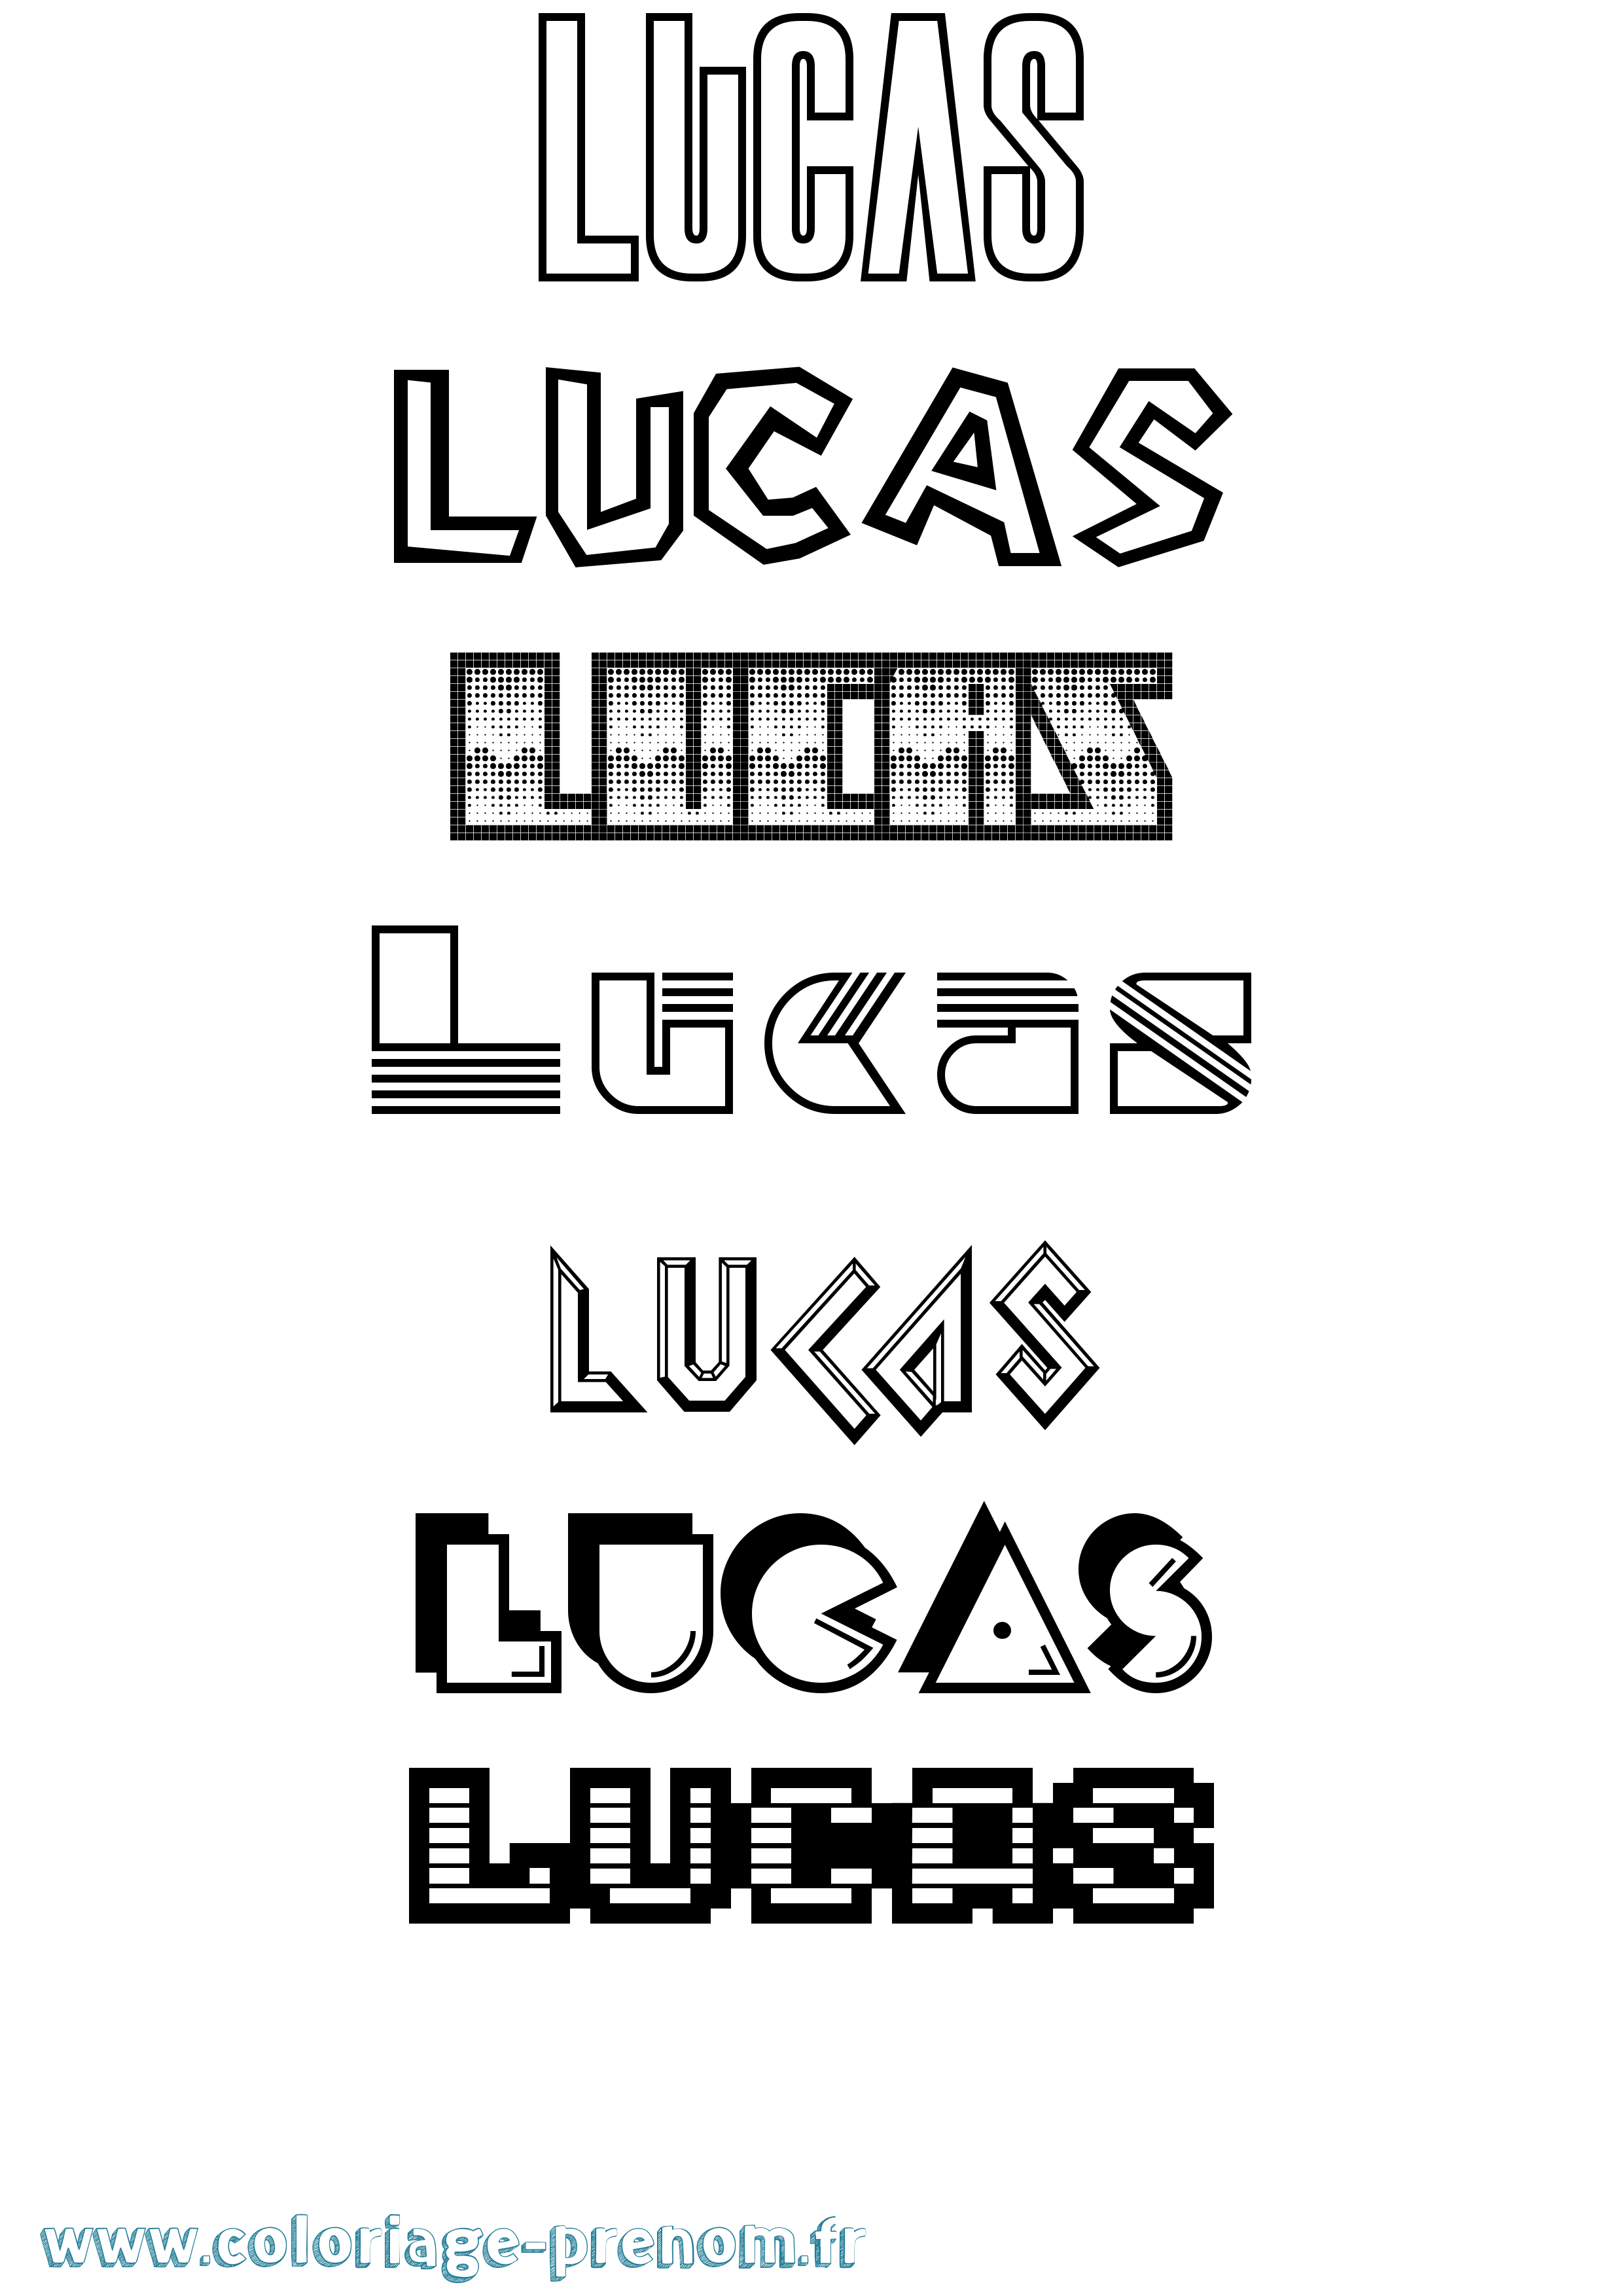 Coloriage prénom Lucas